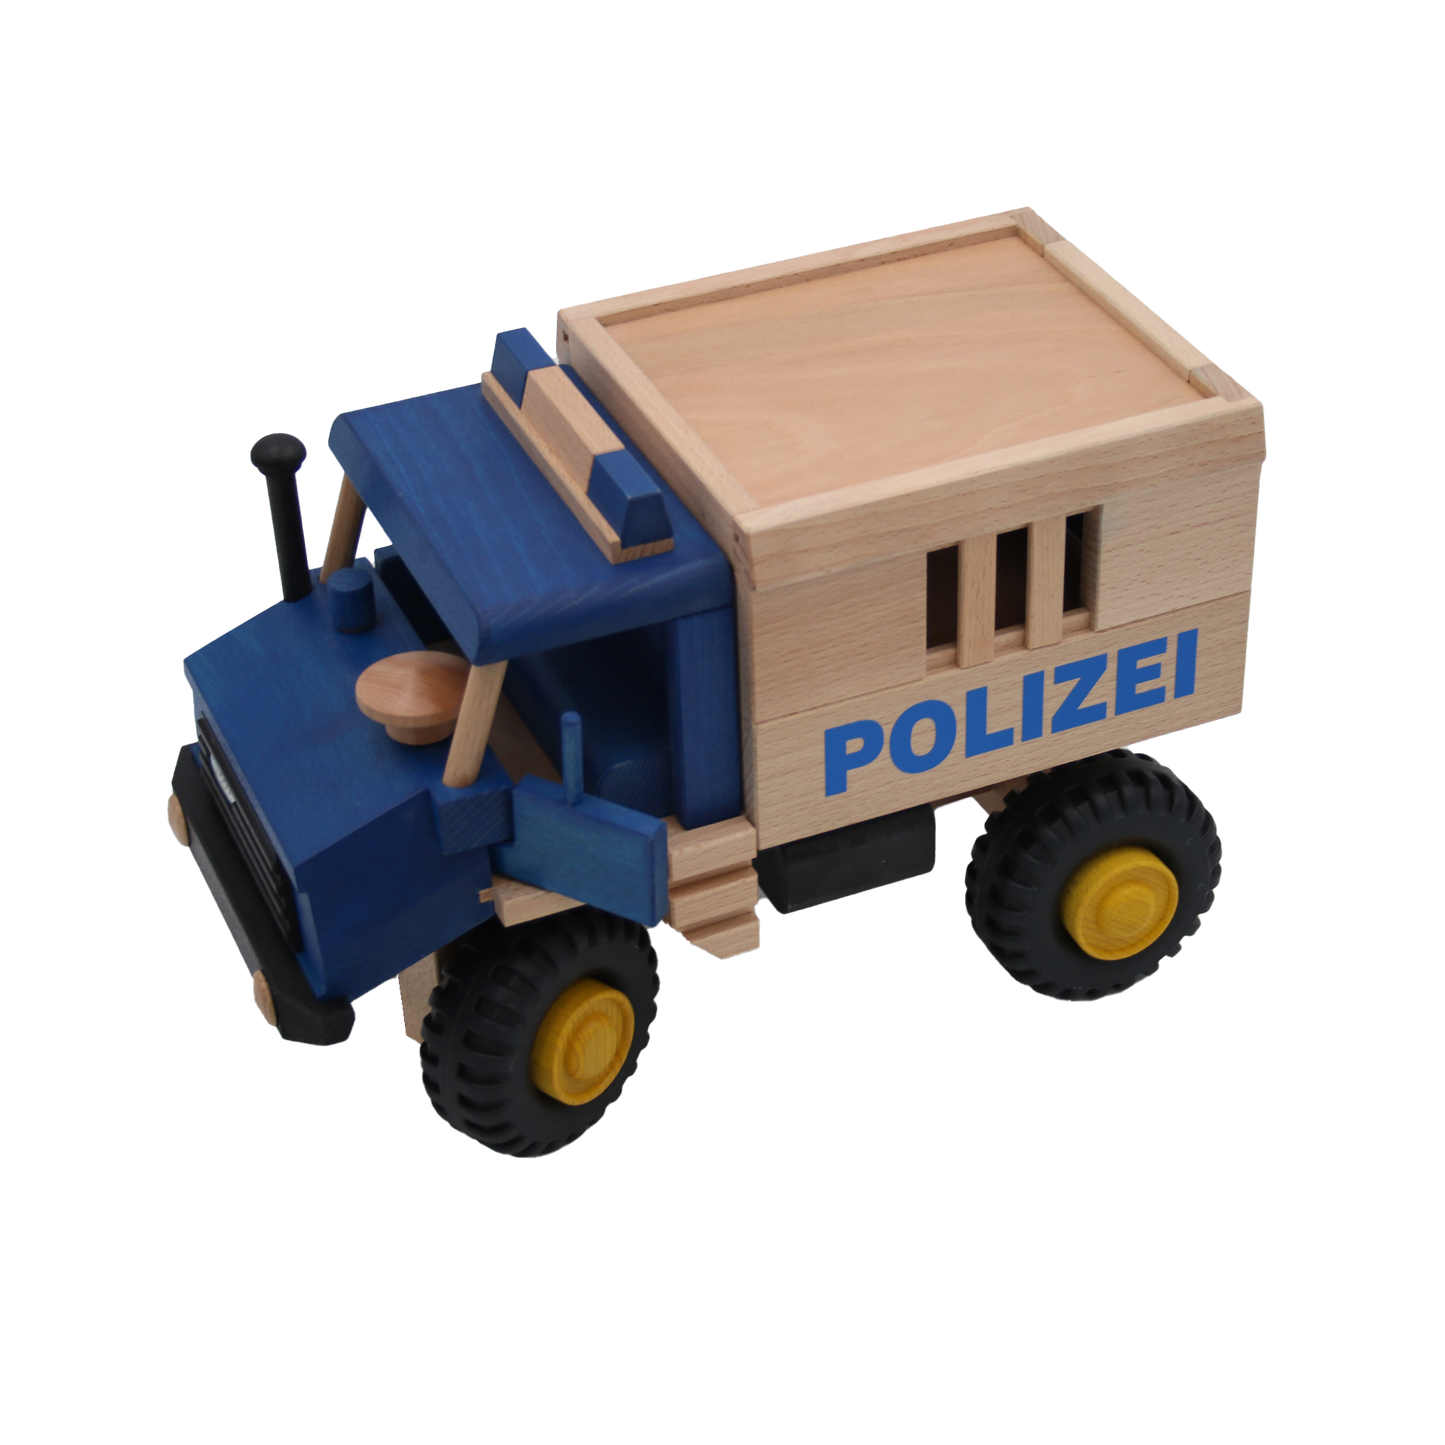 Polizei international, blau-natur-gelb, Buchenholz, Kautschuk, 39x18x23 cm